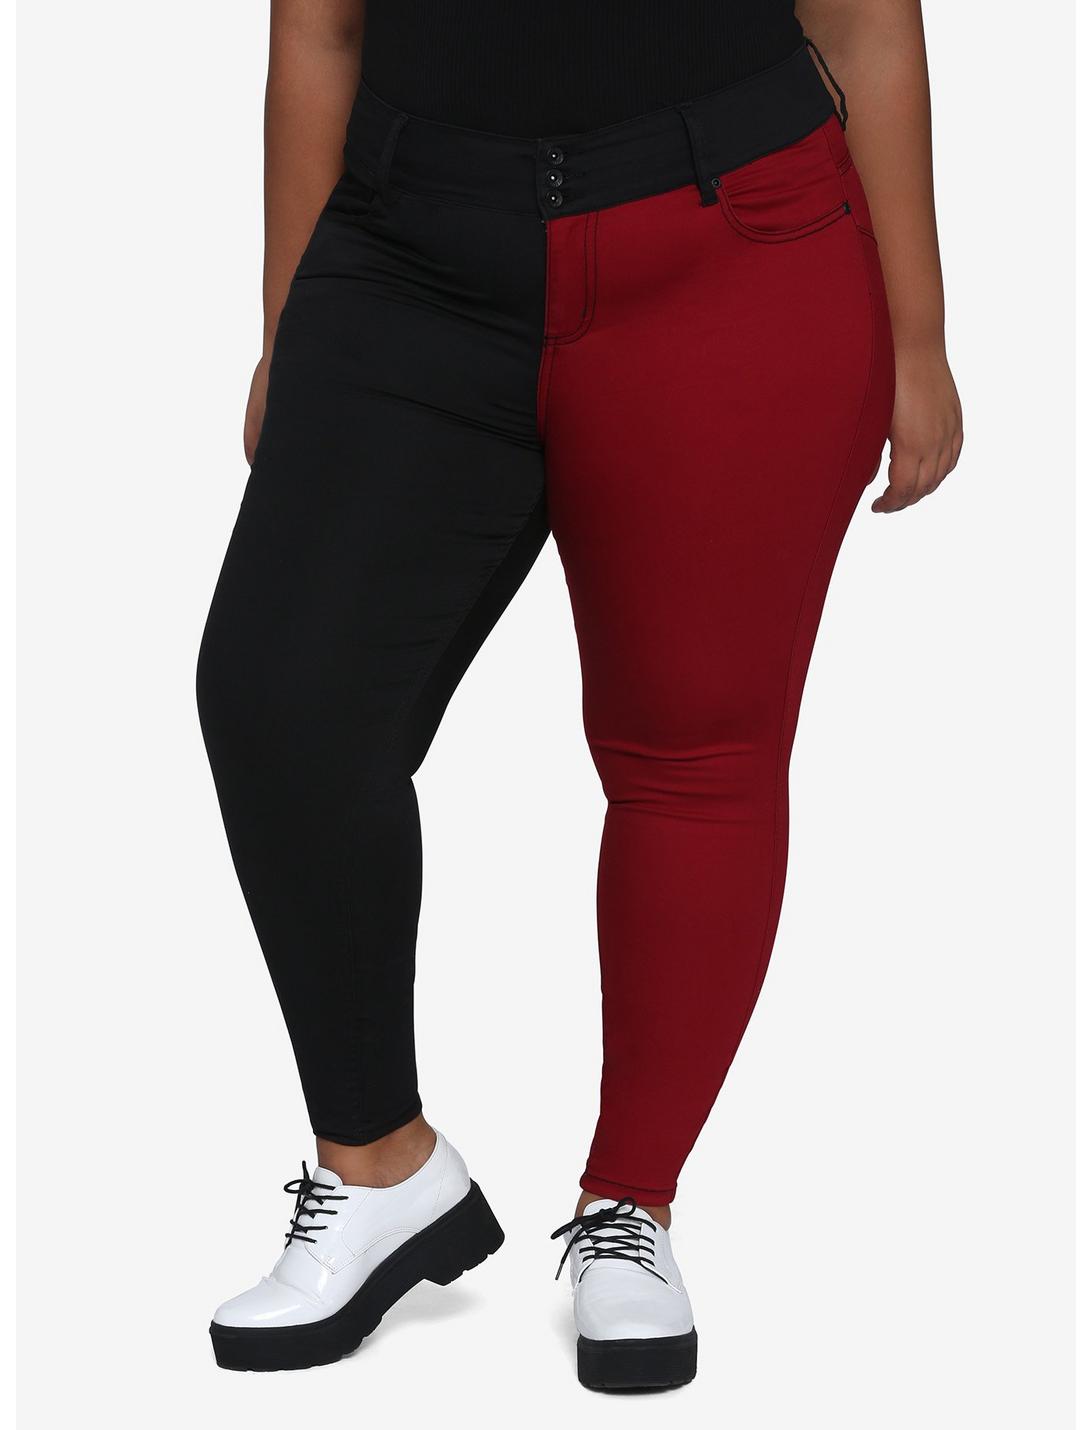 HT Denim Red & Black Split Leg Hi-Rise Super Skinny Jeans Plus Size, MULTI, hi-res